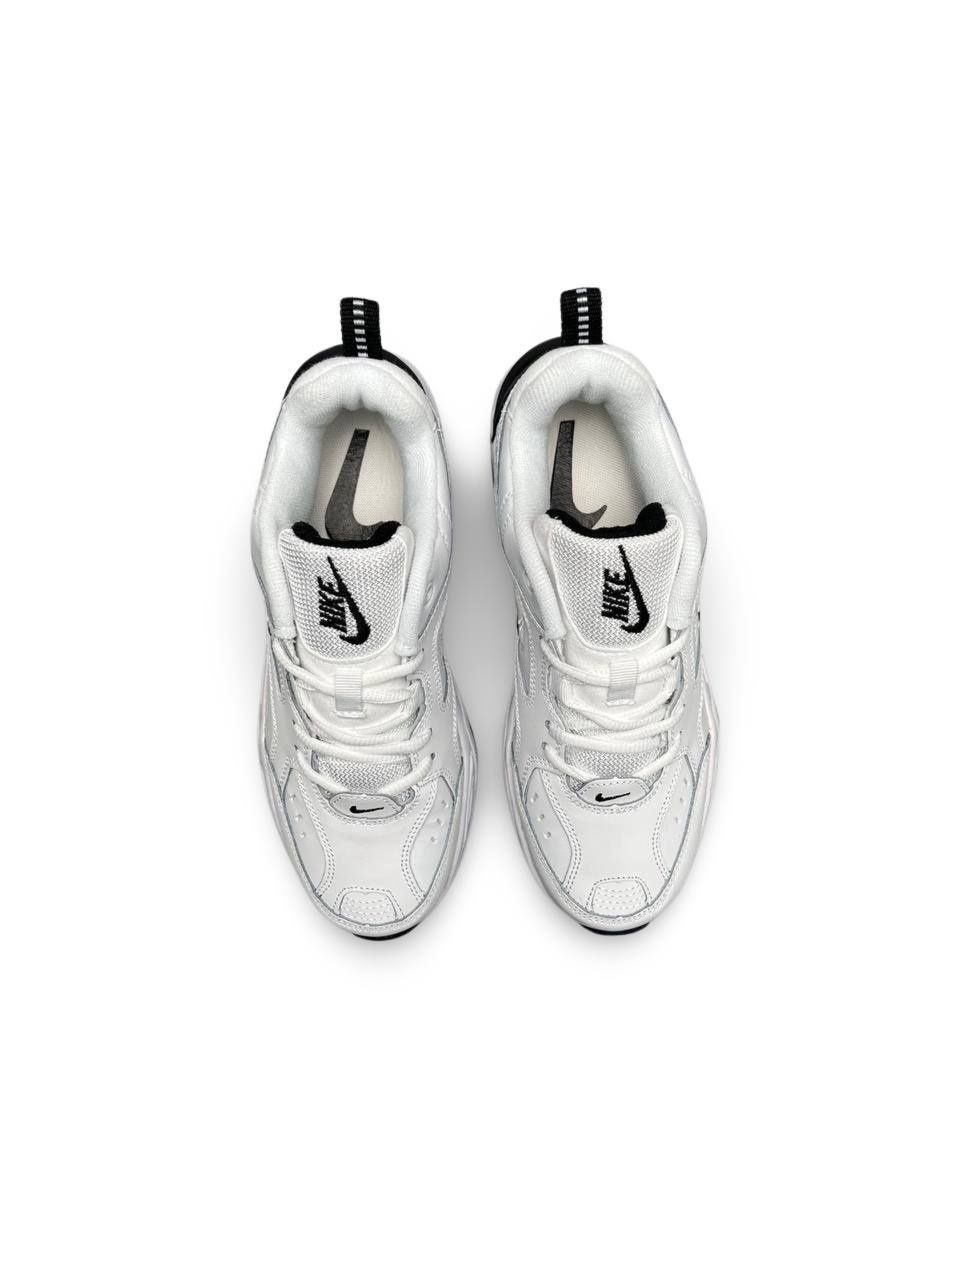 Мужские Кроссовки Nike Air Monarch Белые Кожаные Кроссовки Найк